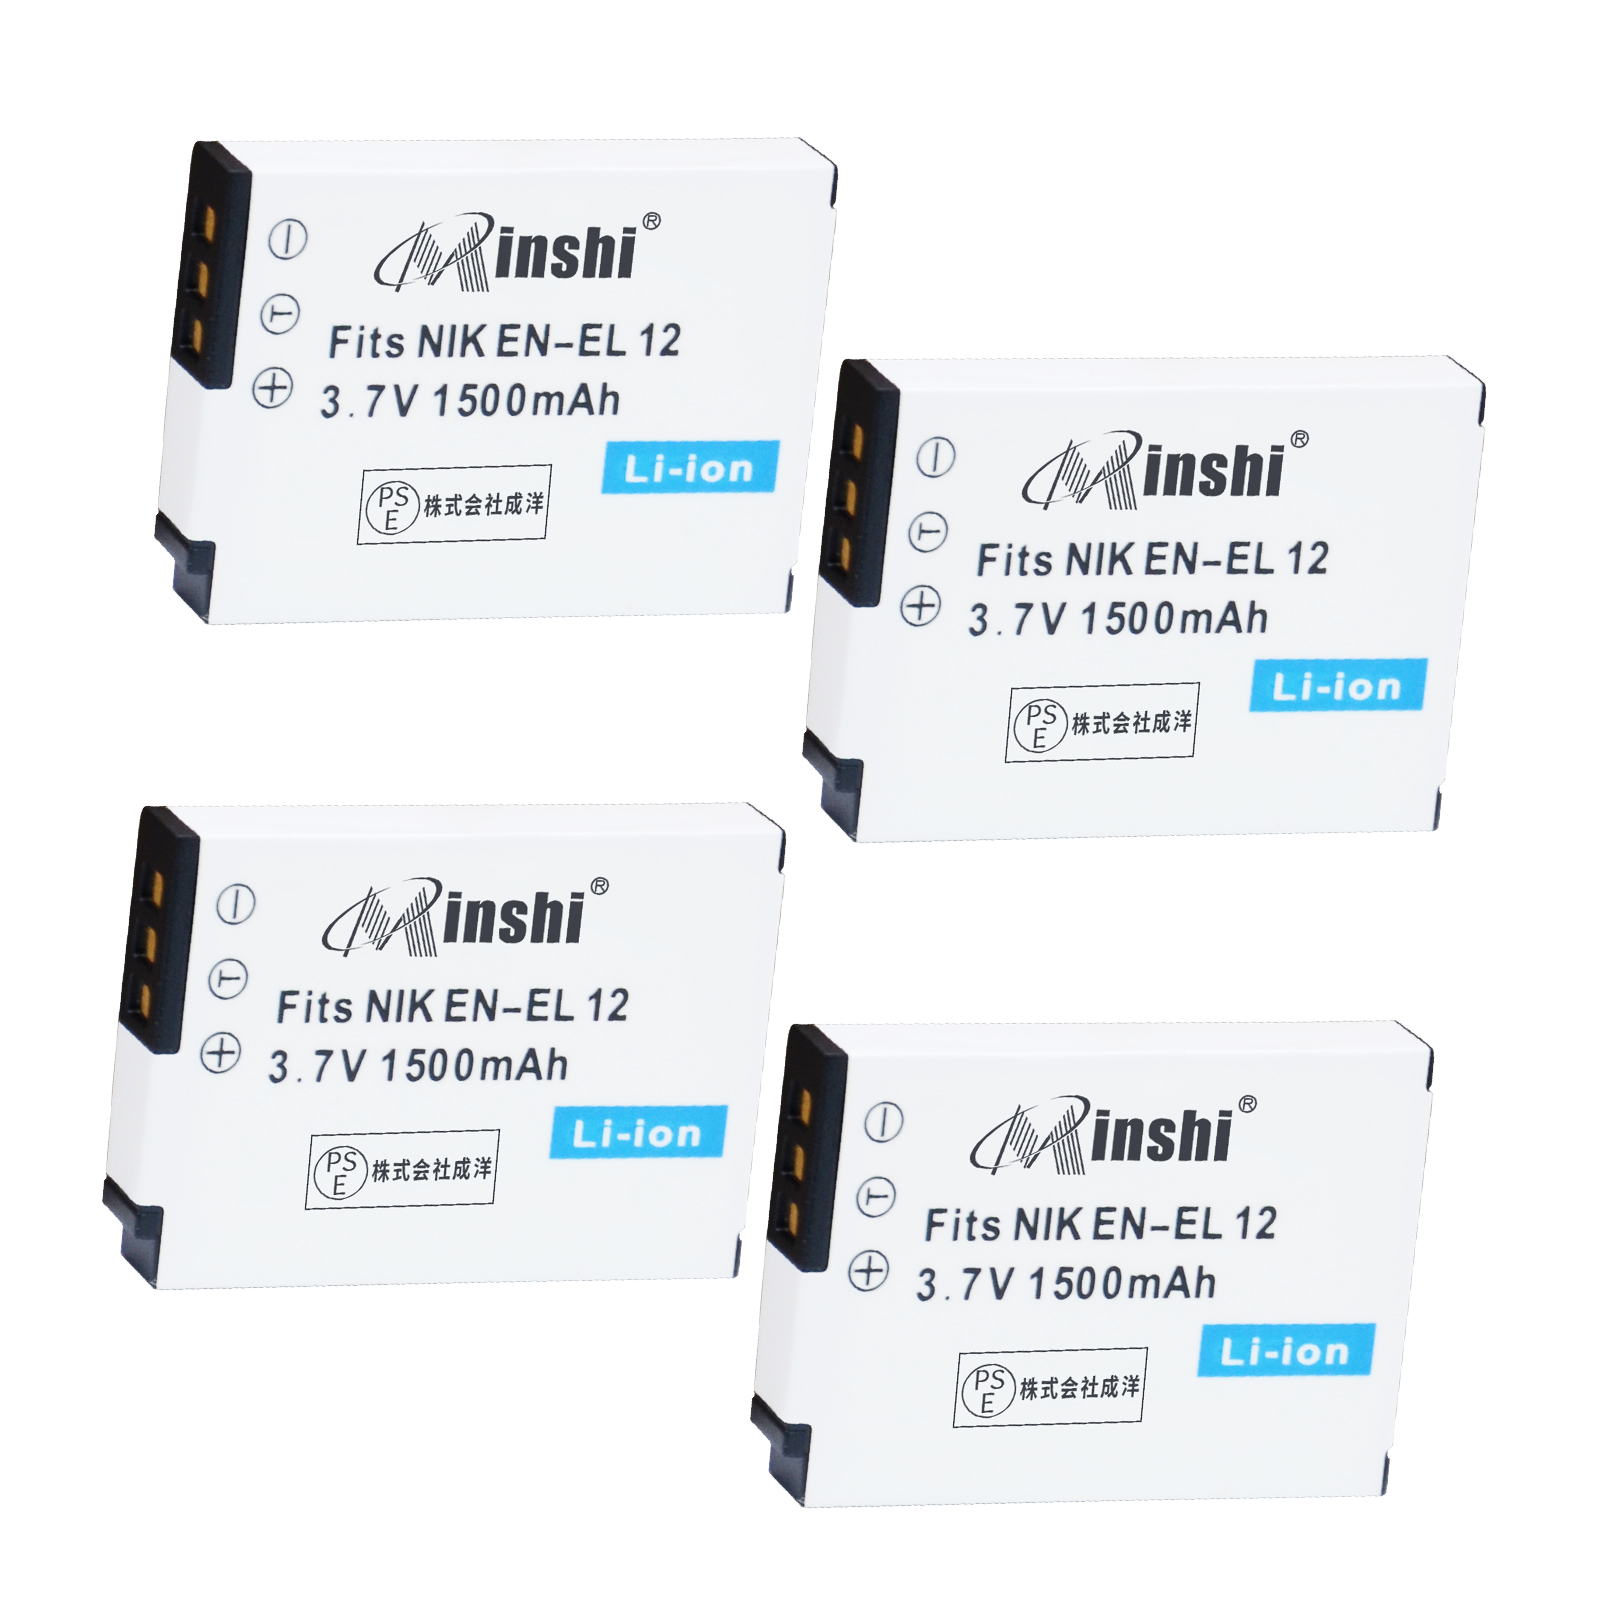 【4個】minshi NIKON COOLPIX S610c AW100 EN-EL12【1500mAh 3.7V】PSE認定済 高品質交換用バッテリー